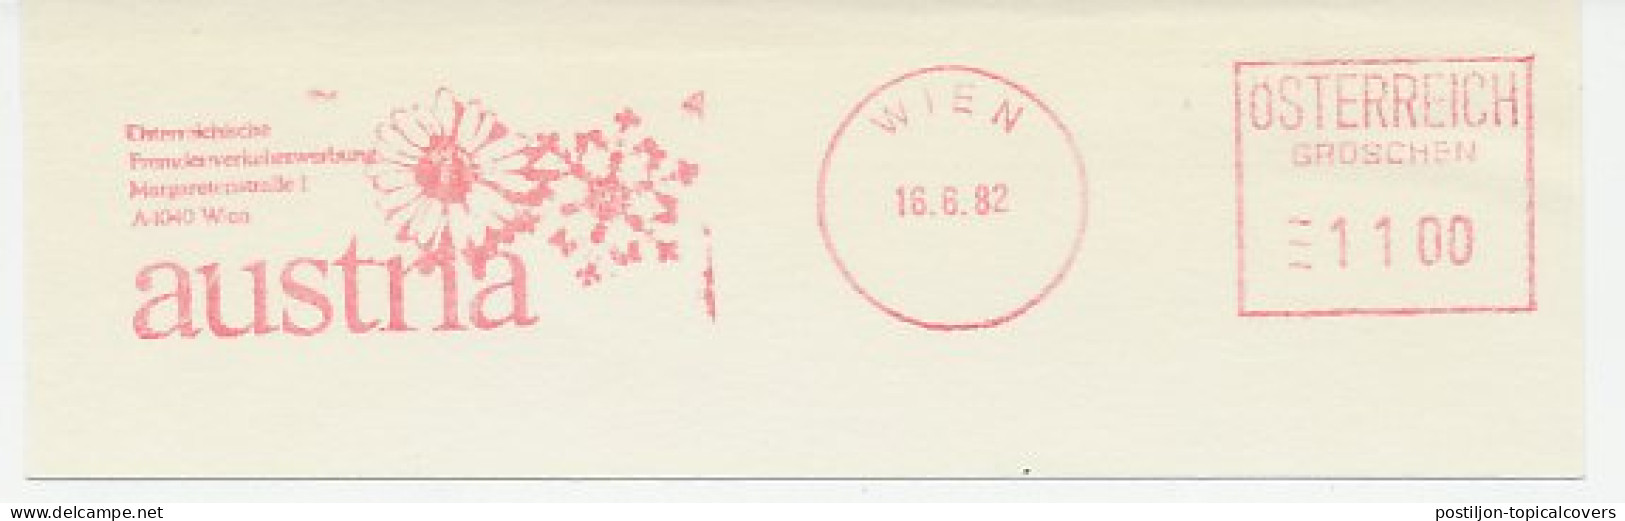 Meter Cut Austria 1982 Austria - Flower - Snow Crystal - Non Classés